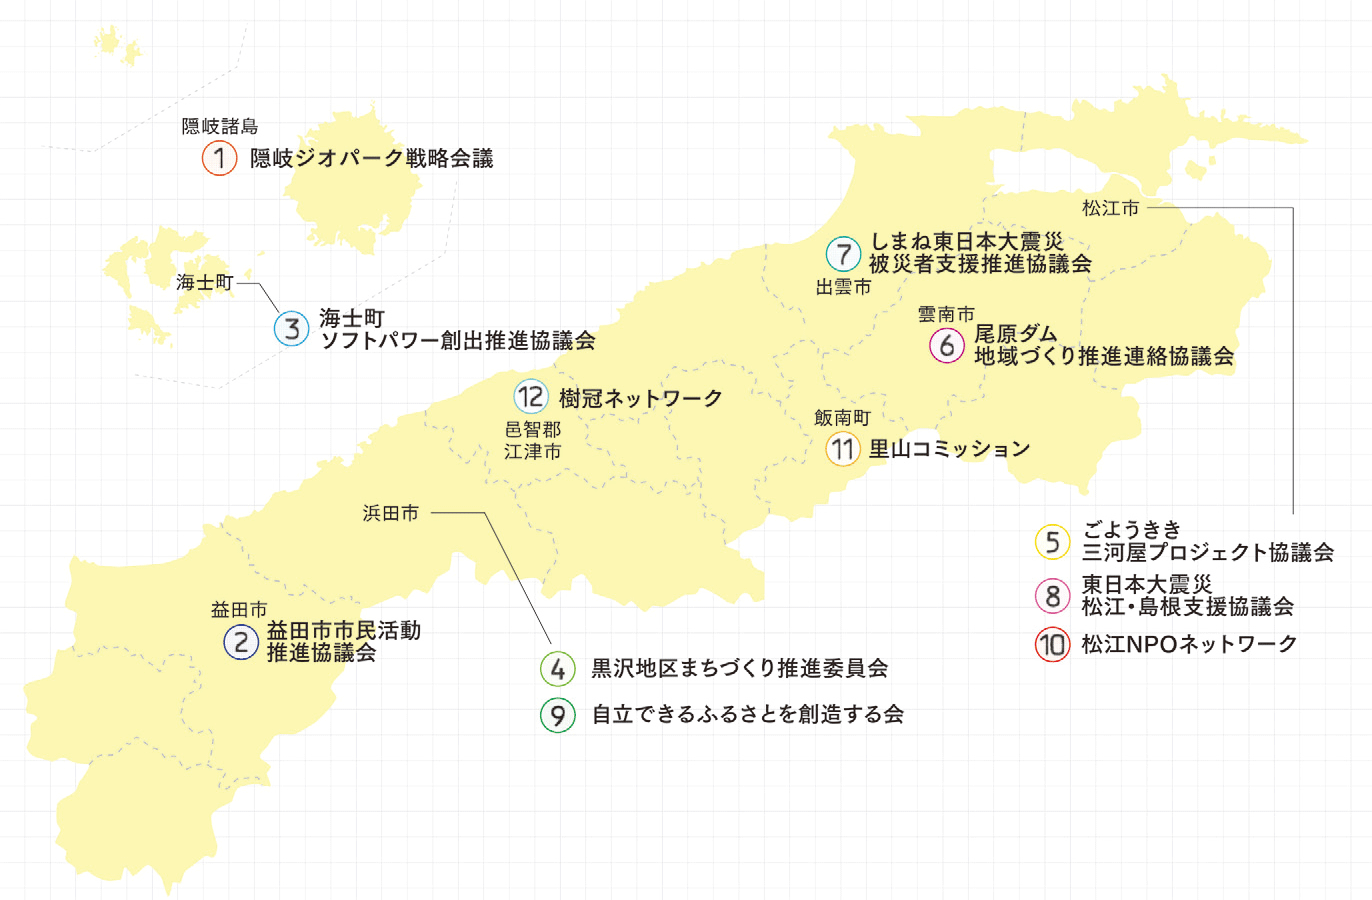 島根県新しい公共支援事業参加団体の場所と名前を示した島根県の地図